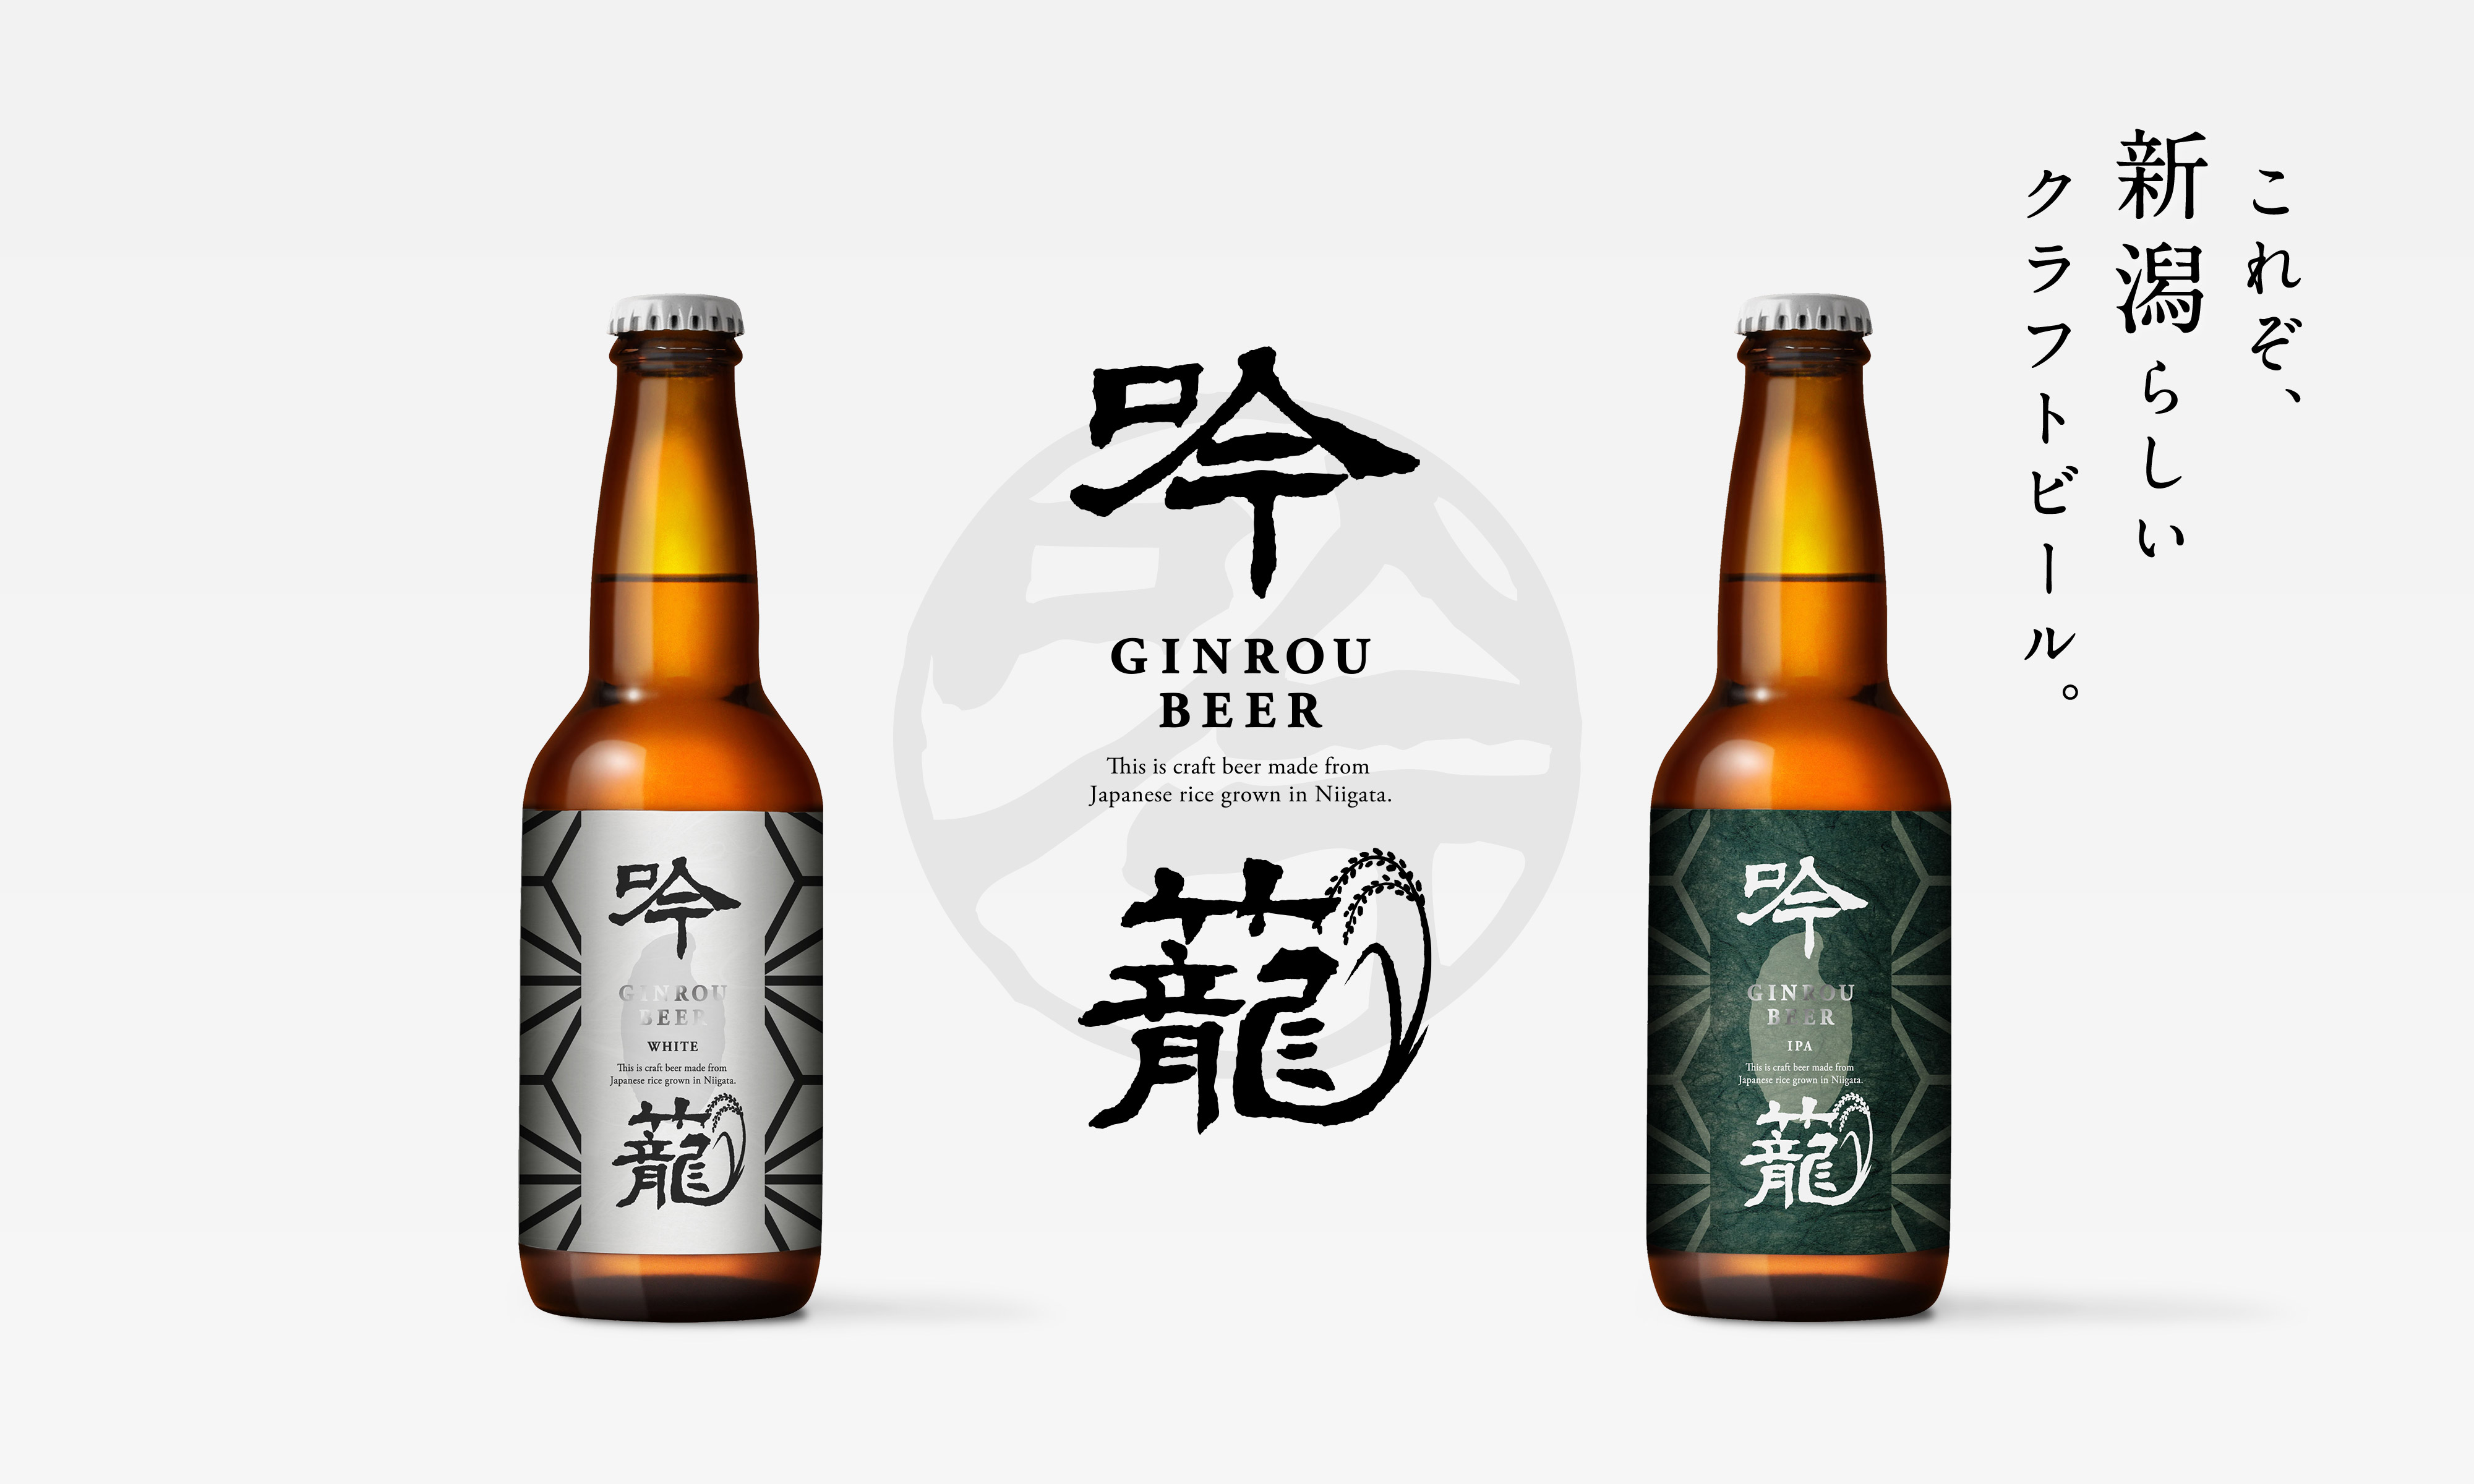 吟籠white 吟籠ipa コシヒカリを原料にしたクラフトビール 新潟ビール醸造株式会社